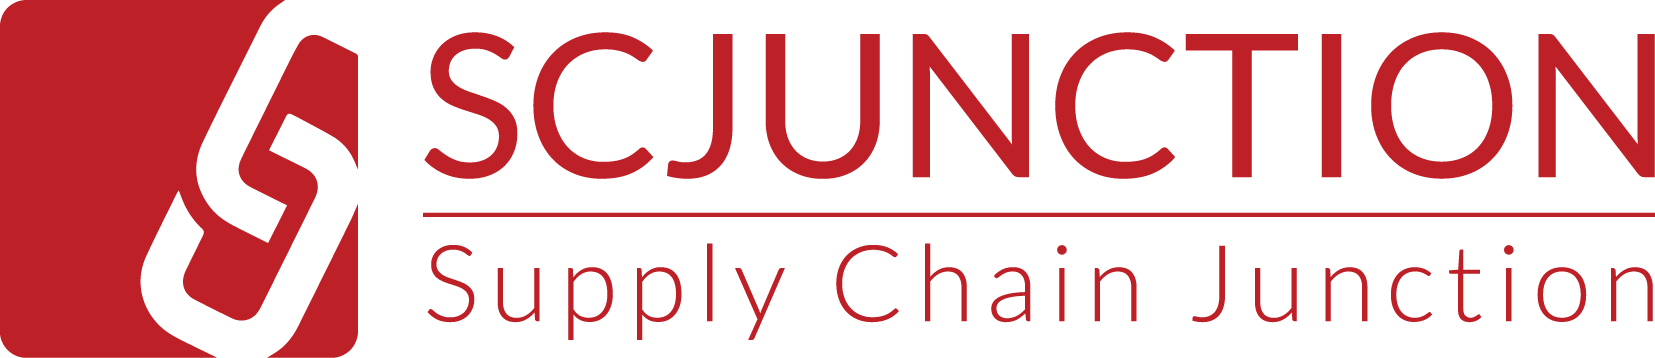 شركة Supply Chain Junction (SCJ)  